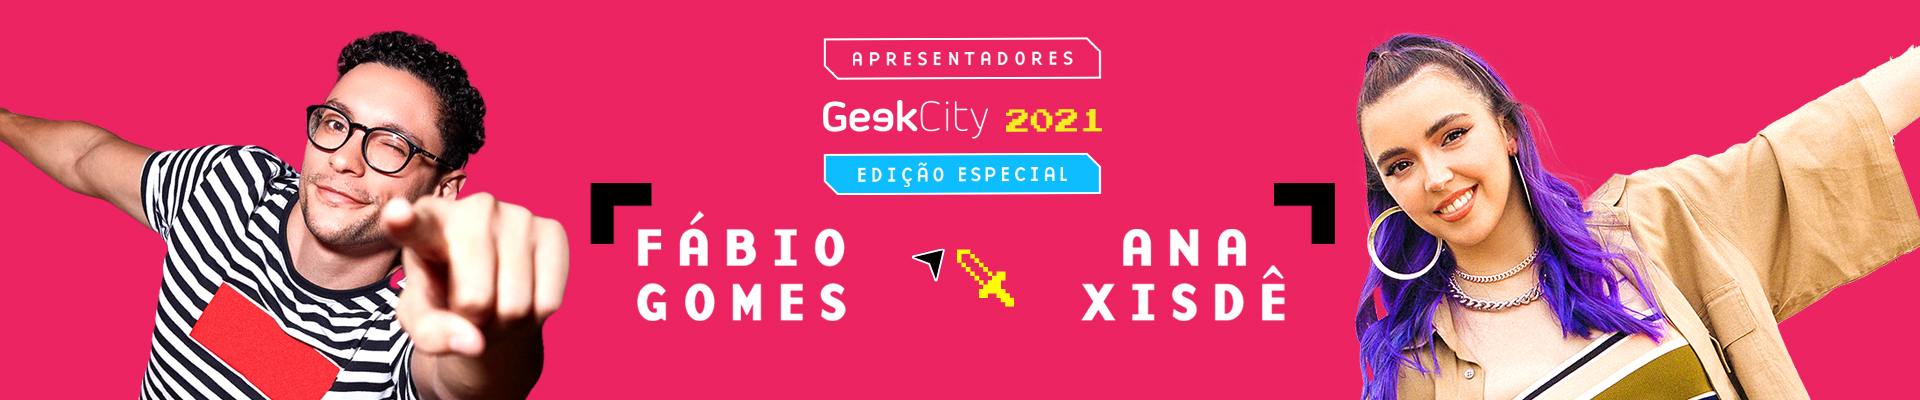 Edição Especial 2021 - Geek City